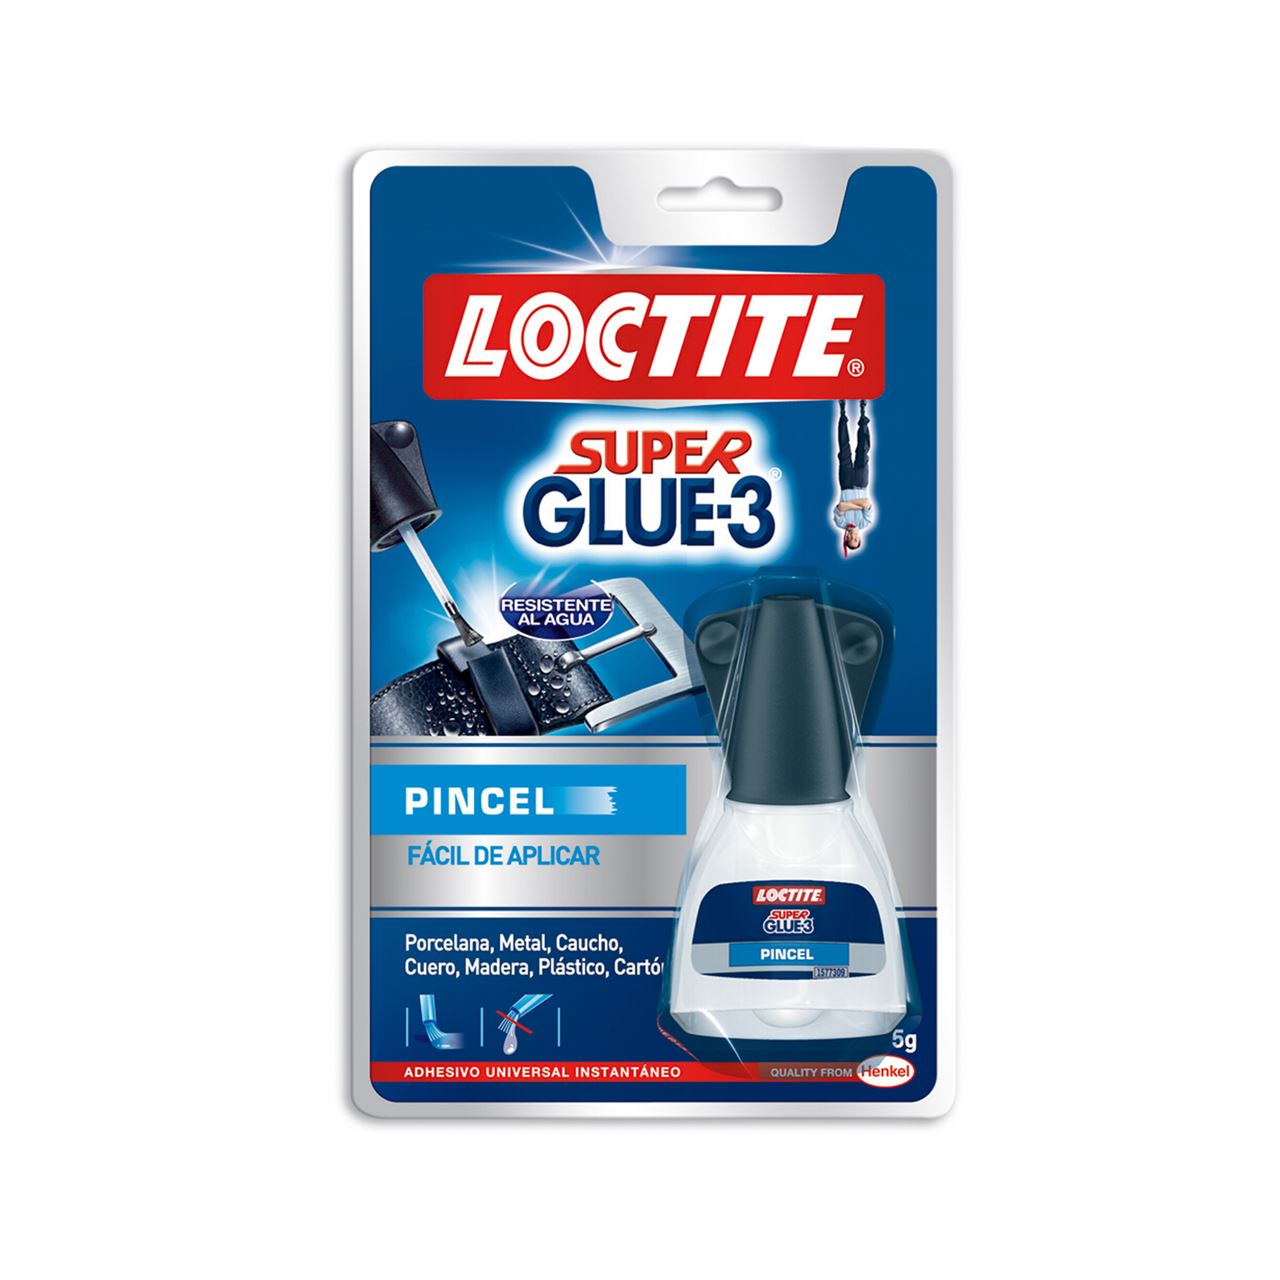 Pegamento Loctite Super Glue-3 pincel 5gr más limpiador 2gr – Encajados